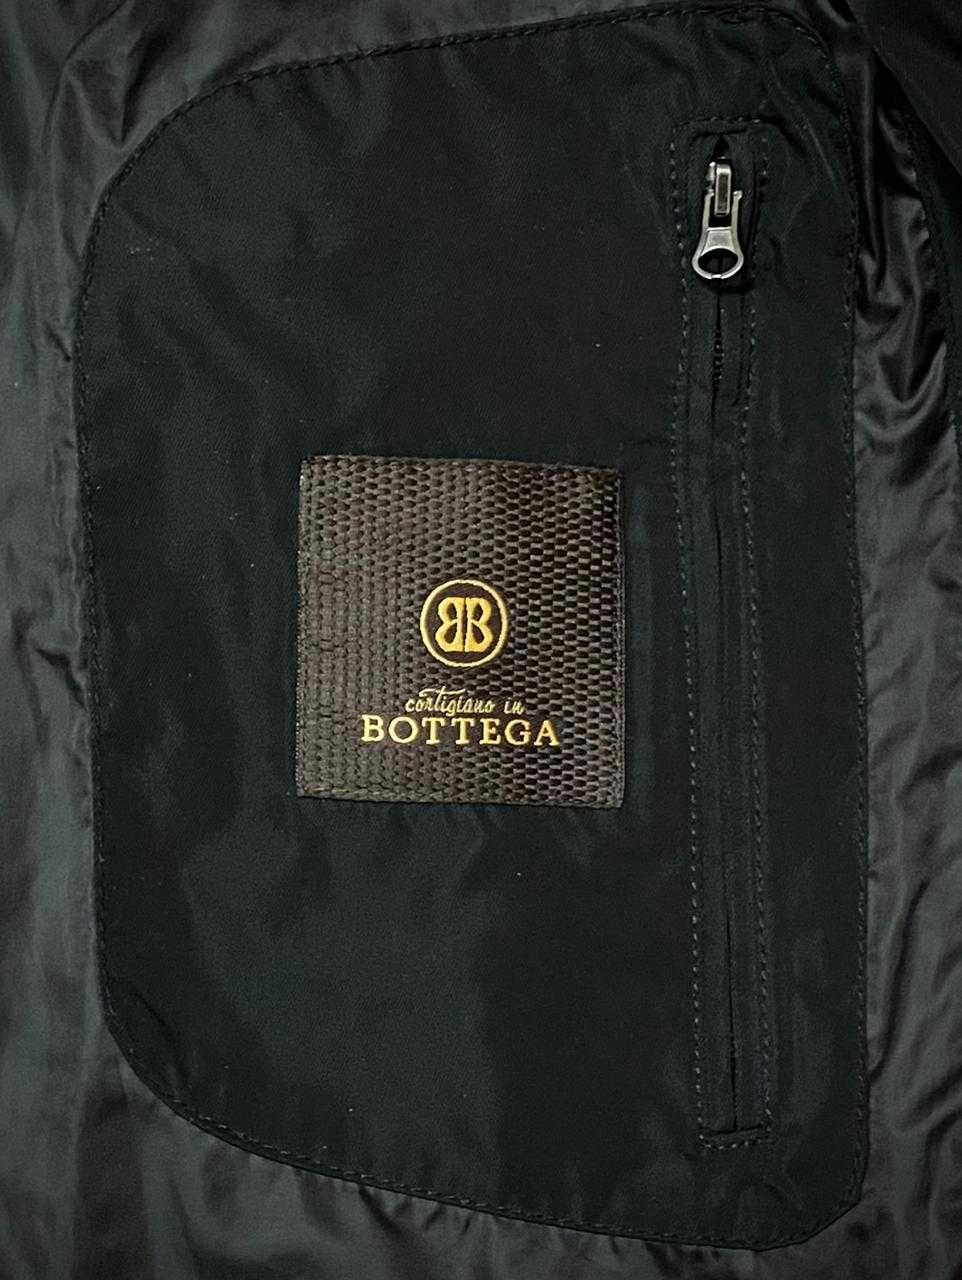 Фирменная куртка на весну от "Bottega" Italy ХL на 50-52 размер.